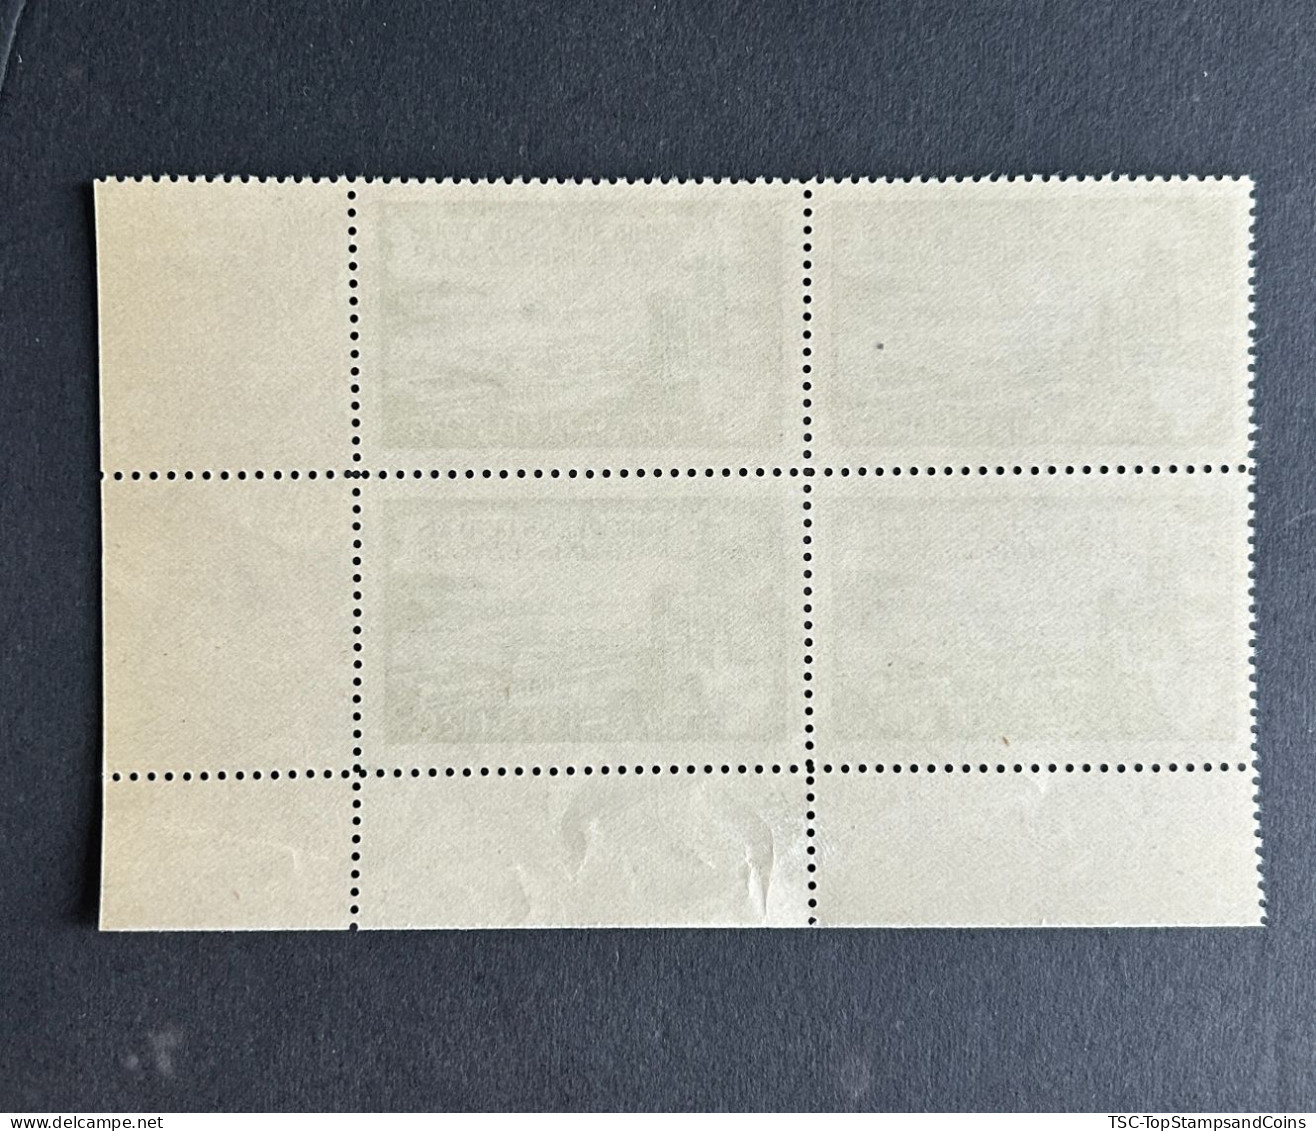 FRAZV050MNH - Strasbourg - Européens De Tous Pays Unisez-vous - Block Of 4 MNH Label Stamps - France - 1960 - Tourism (Labels)